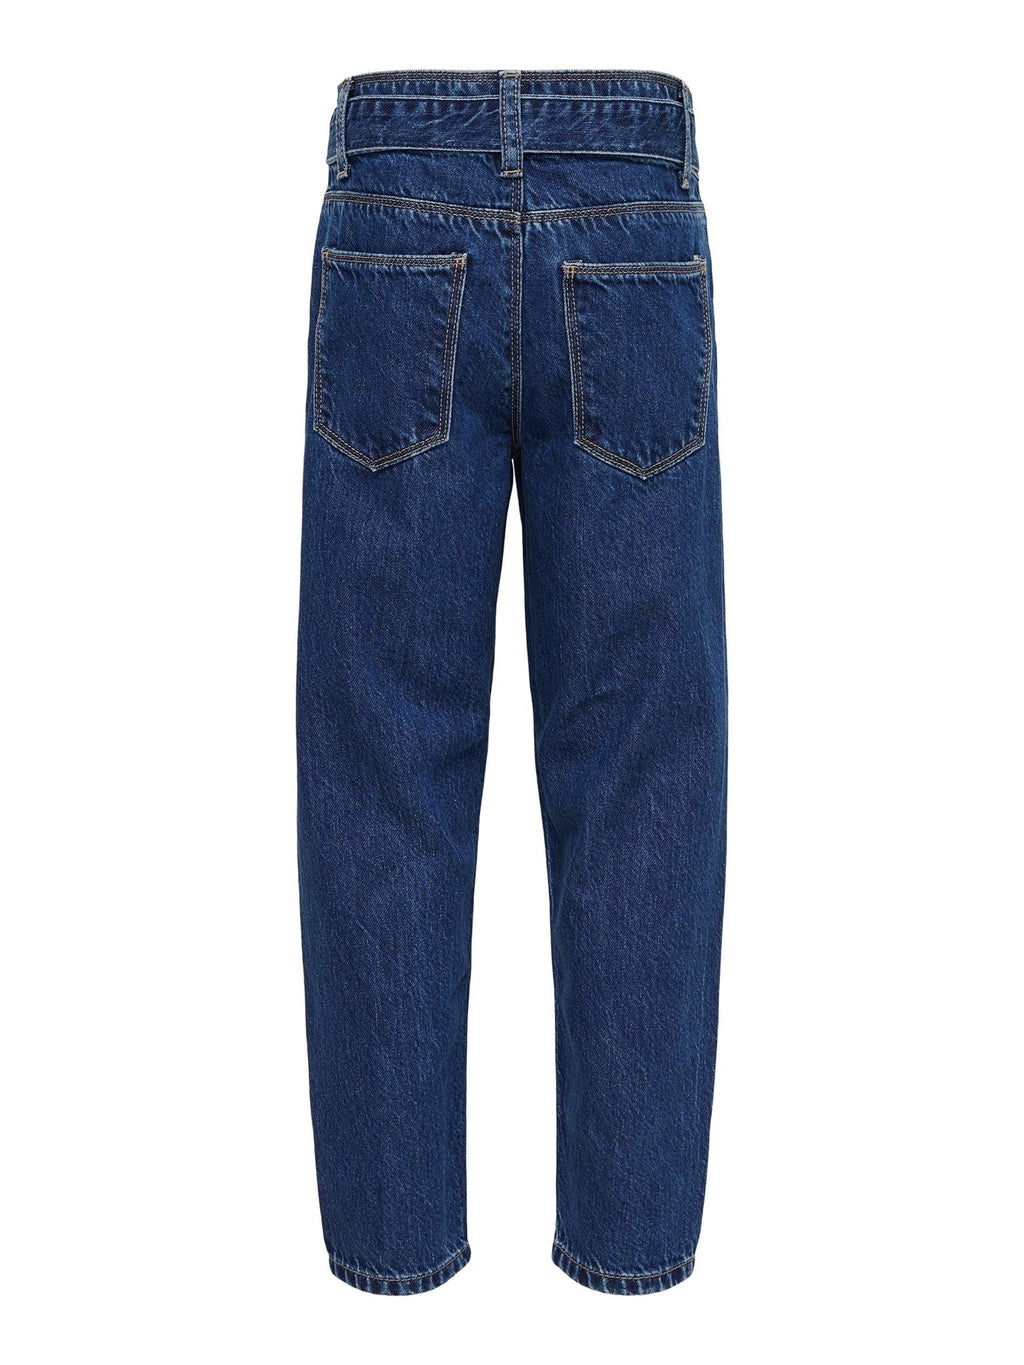 „Lu Reg Carrot Jeans“ - lengvas vidutinio mėlynos spalvos džinsinis audinys